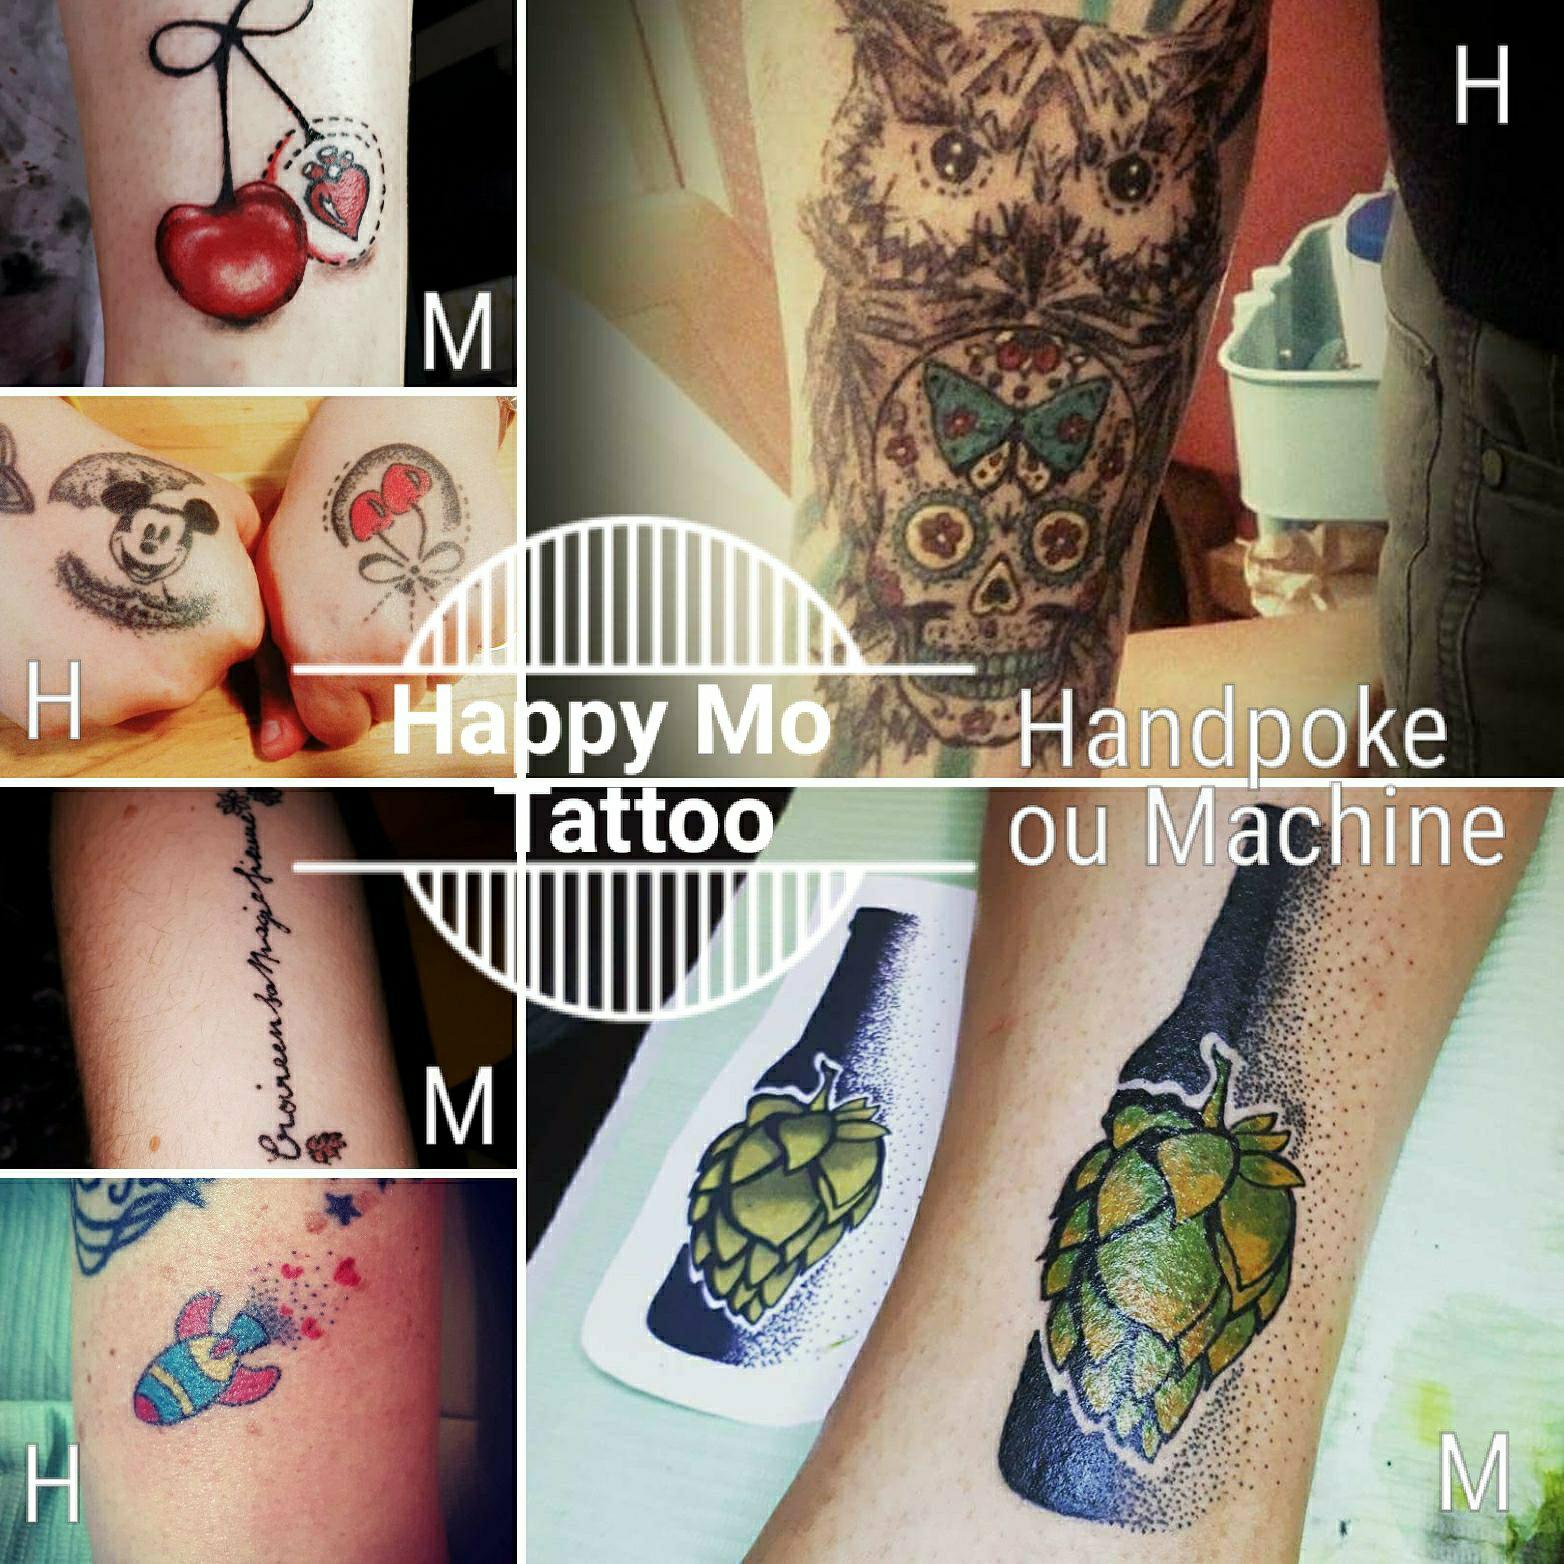 happy-mo-tattoo-rv-orchies-tatouage